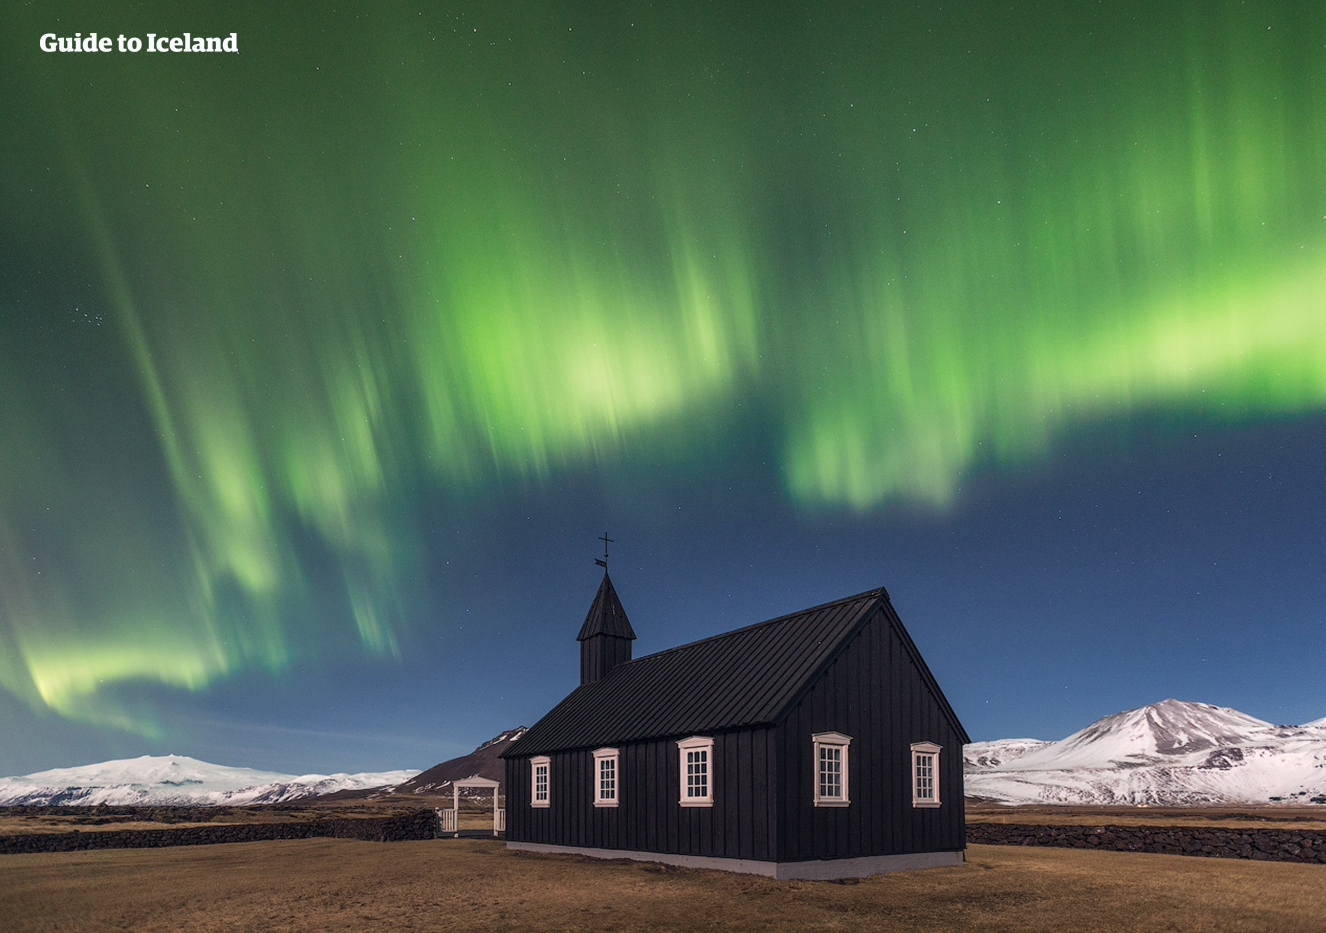 Der Himmel über der schwarzen Kirche von Budir auf der Halbinsel Snaefellsnes erstrahlt im grünen Licht der Aurora Borealis.